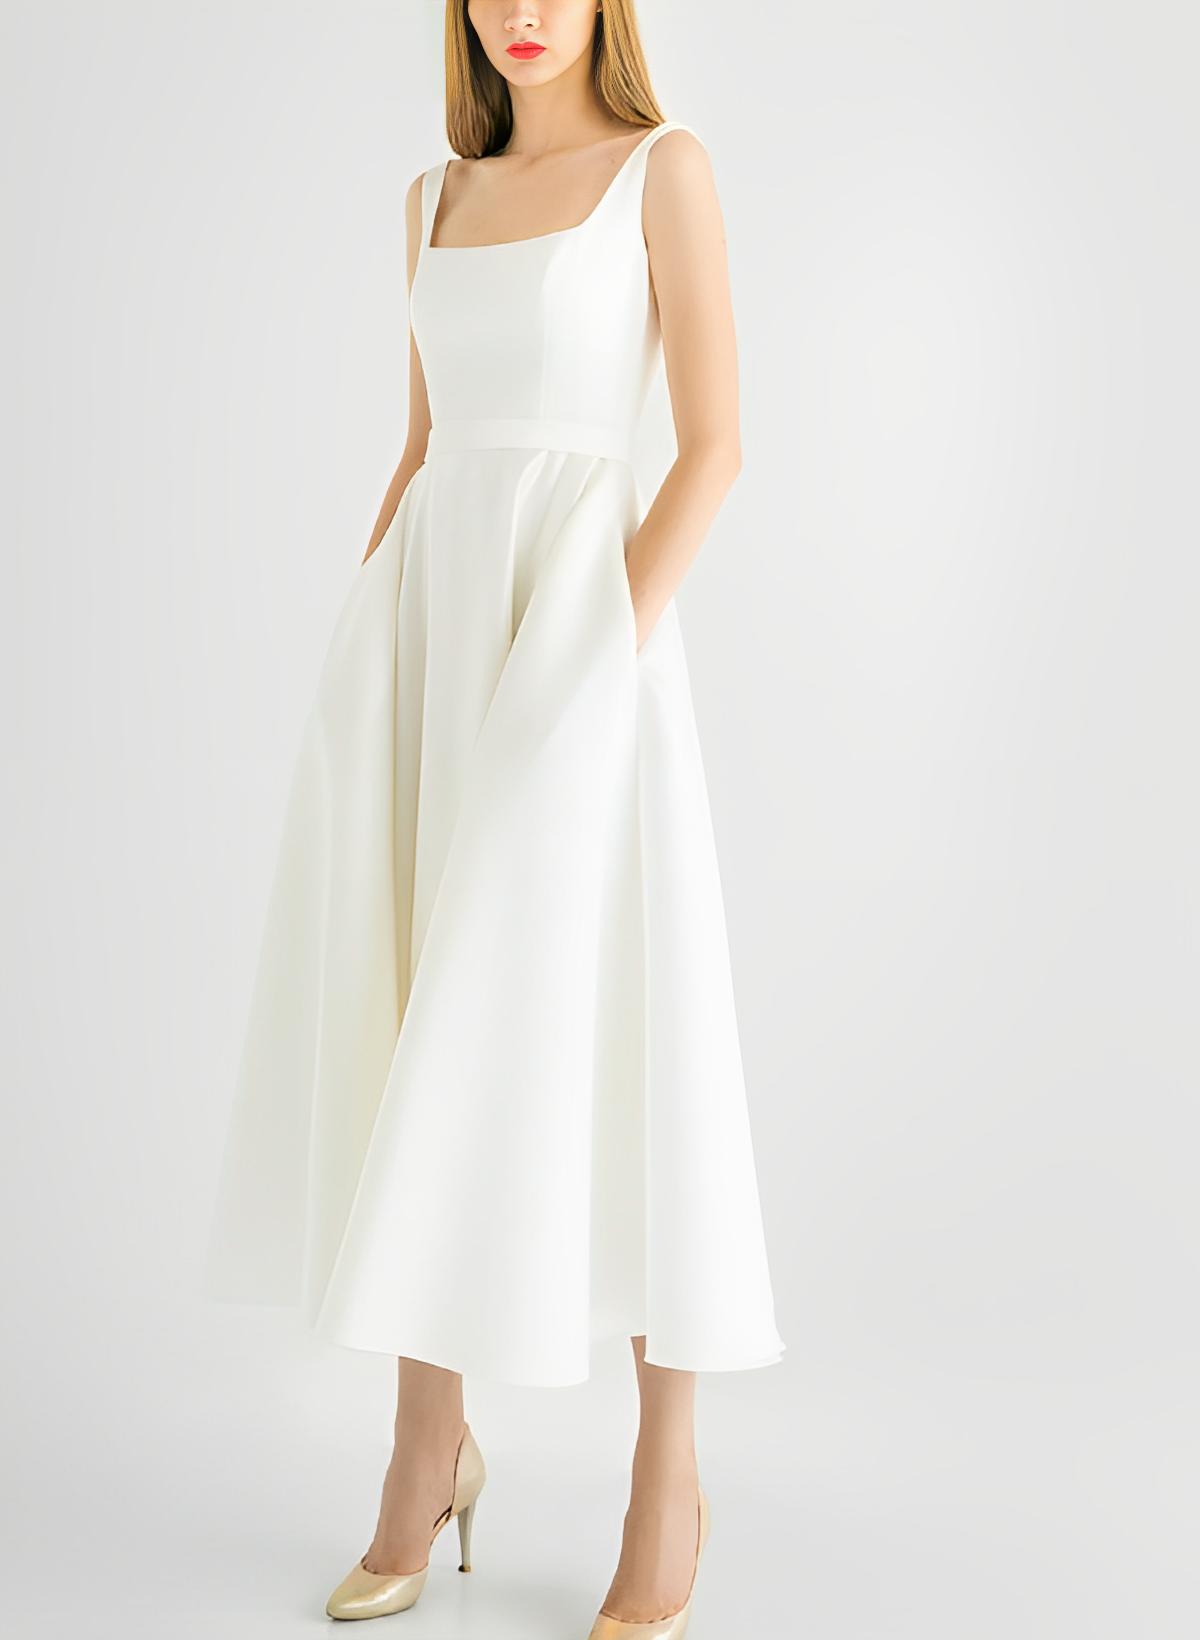 A-Line Square Neckline Sleeveless Tea-Length Satin Wedding Dresses With Pockets